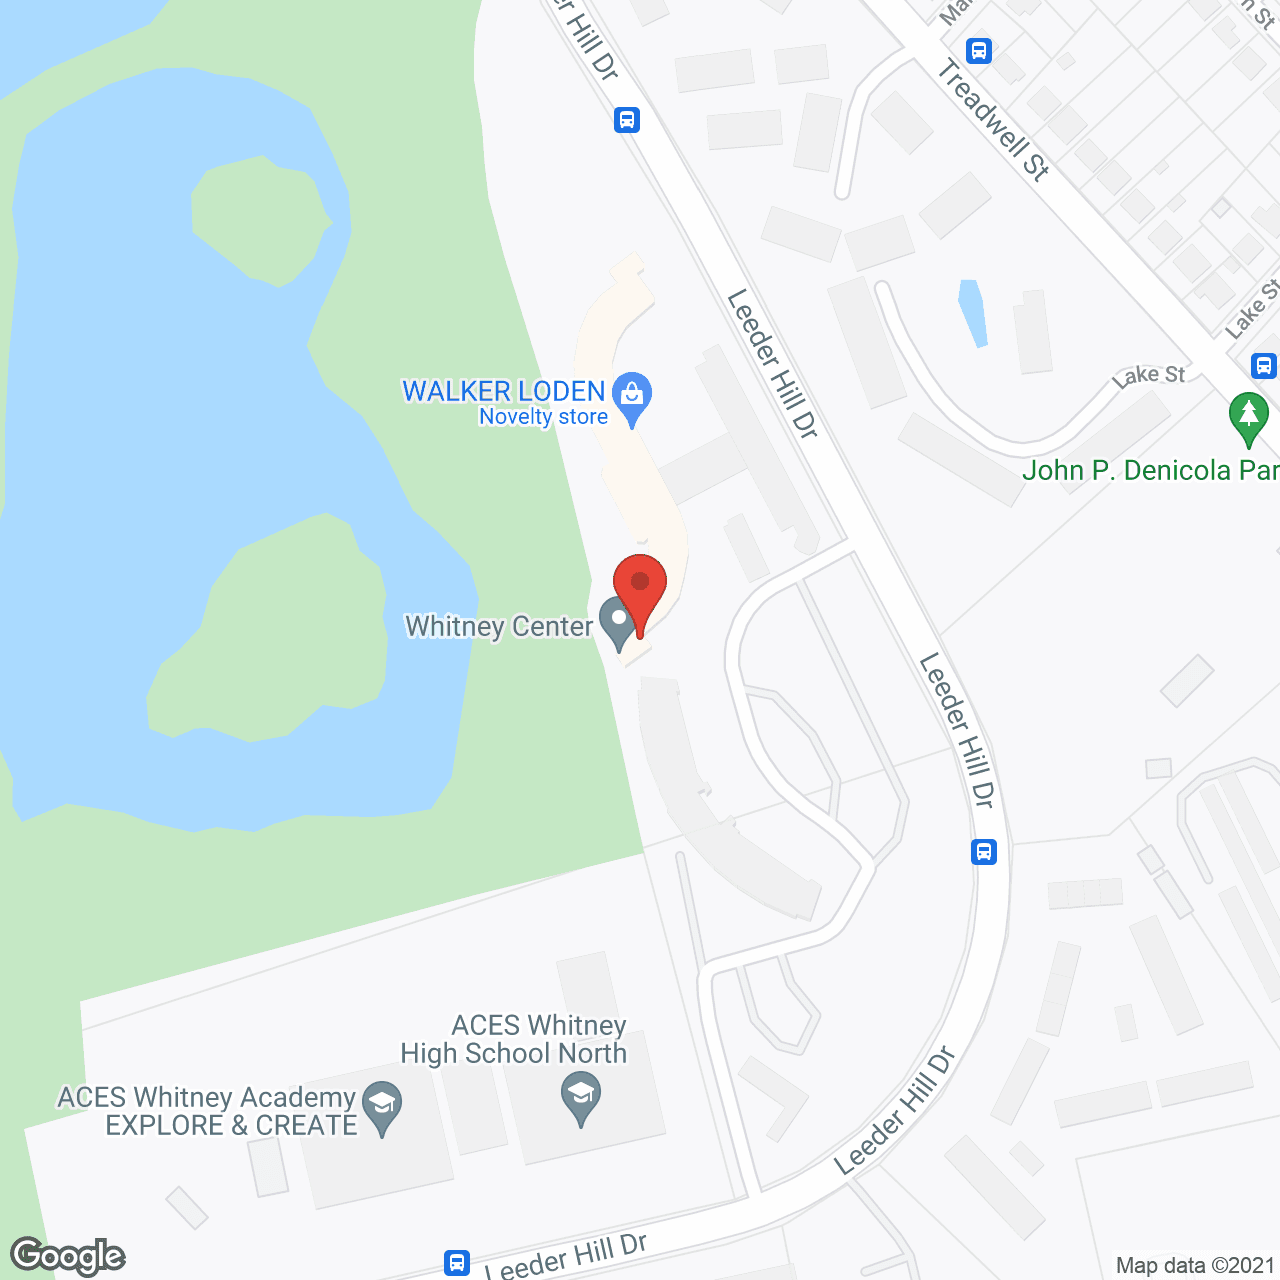 Whitney Center in google map